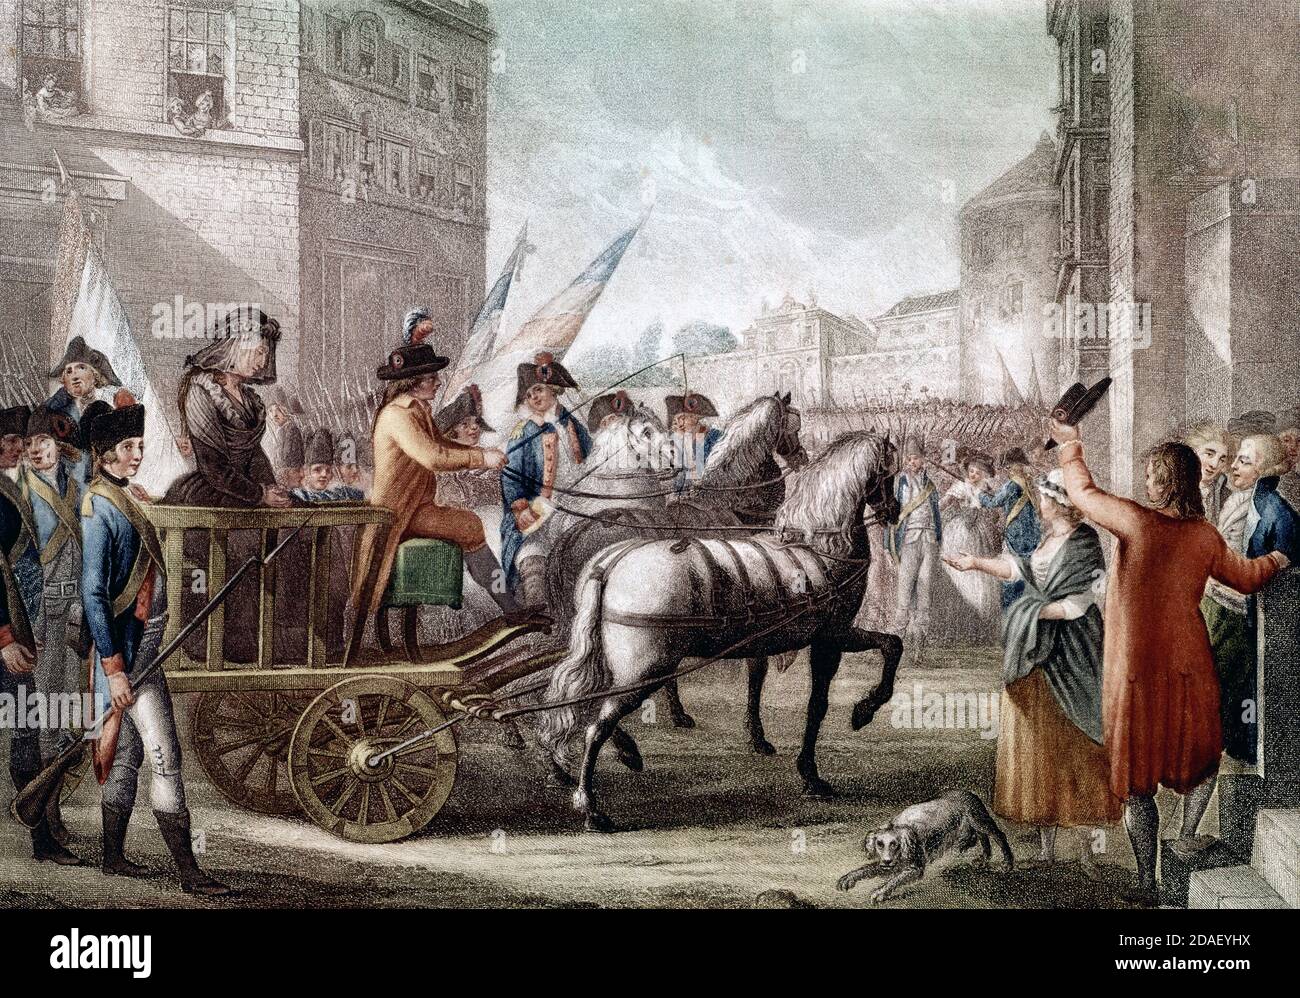 Reina María Antonieta siendo conducida a la guillotina, 16 de octubre de 1793 - la reine María Antonieta étant conduite à la guillotina, le 16 octobre 1793 Foto de stock